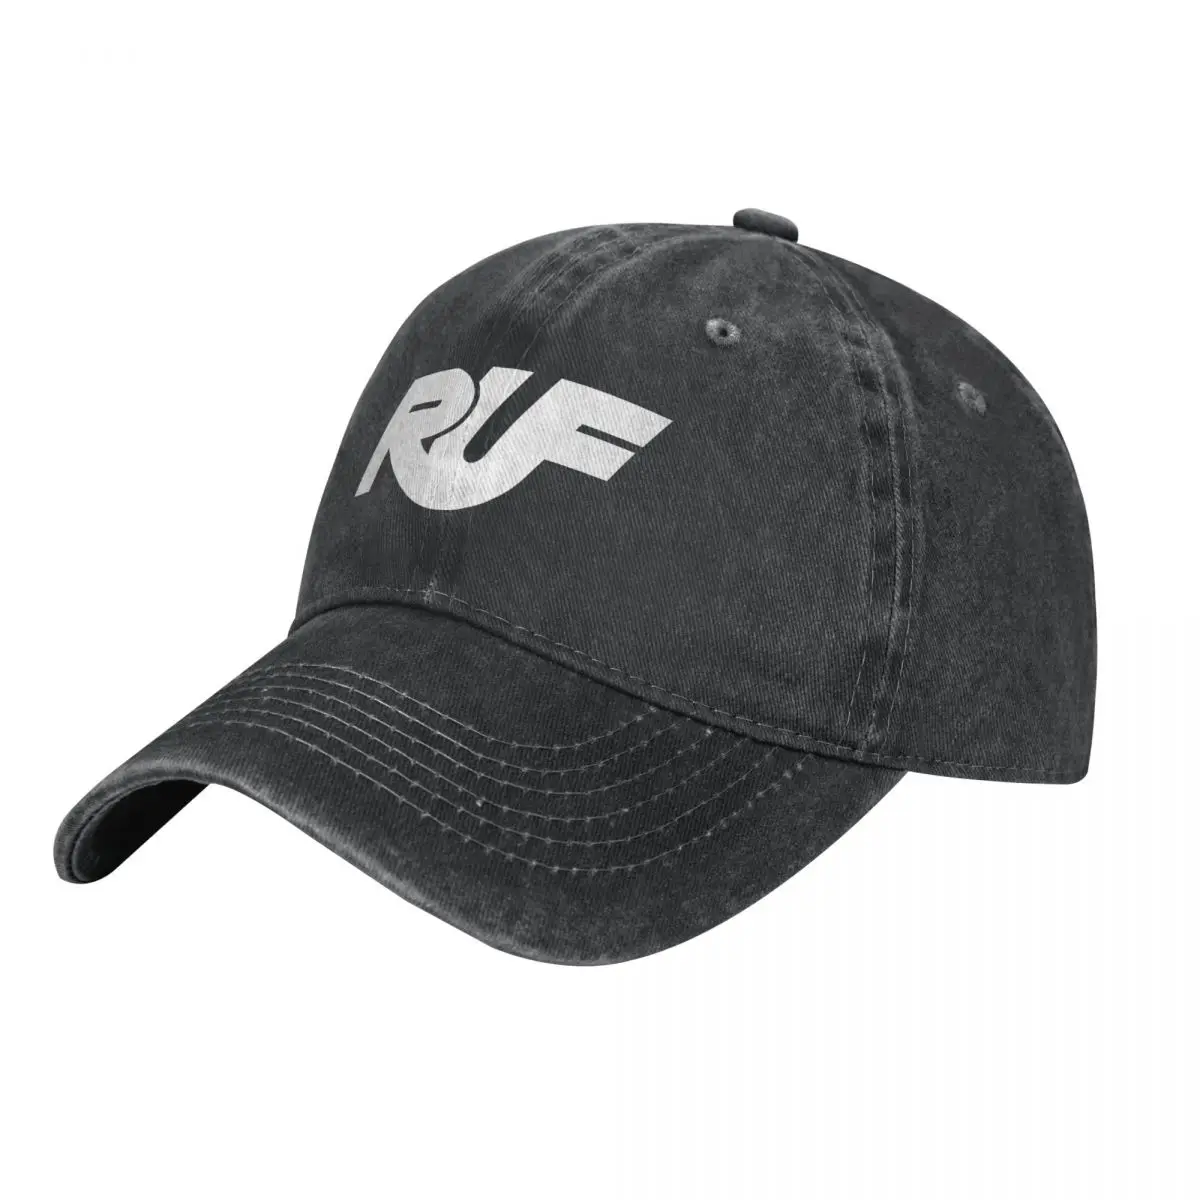 Ковбойская шляпа RUF Tuner, день рождения, новая в шляпе, Новая в шляпе для девочек, мужская